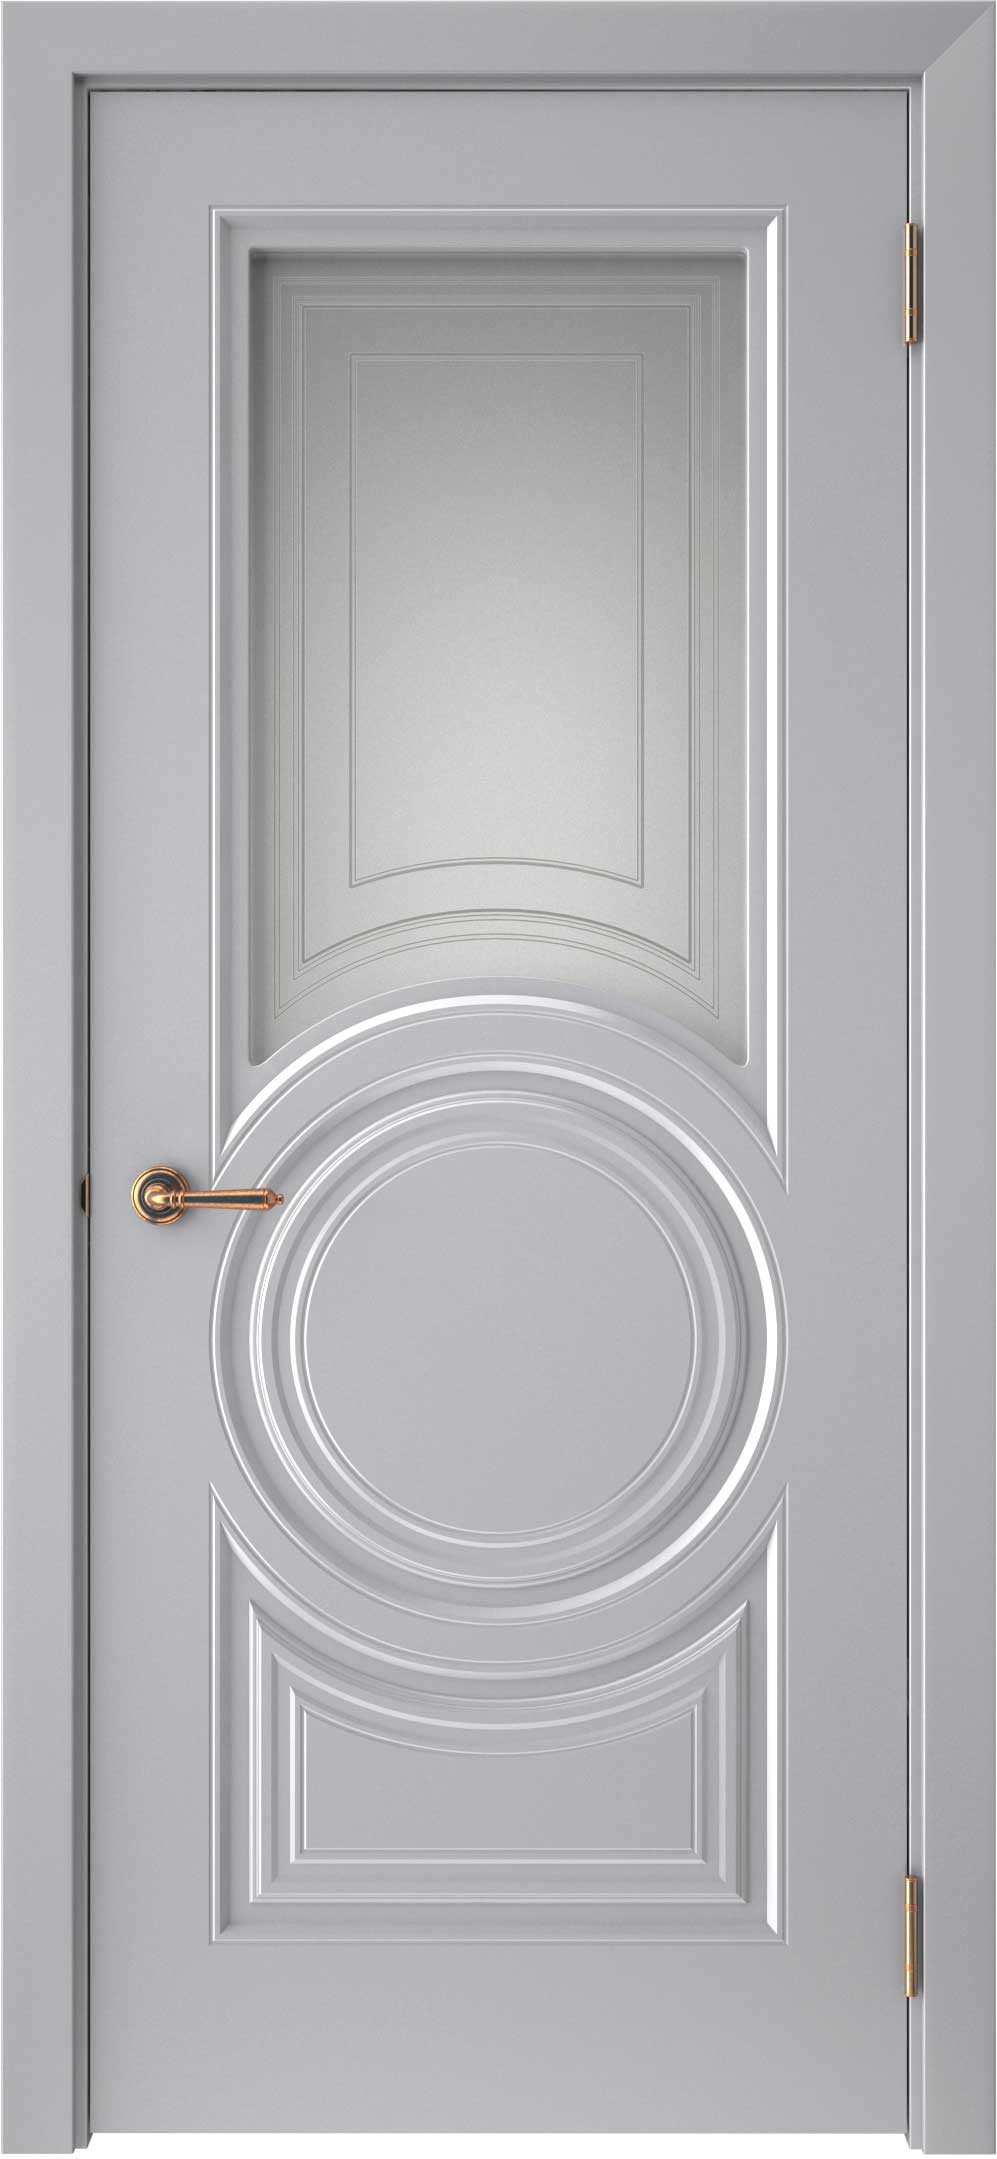 Двери крашеные (Эмаль) ТЕКОНА Смальта-45 со стеклом Серый ral 7036 размер 200 х 60 см. артикул F0000093324